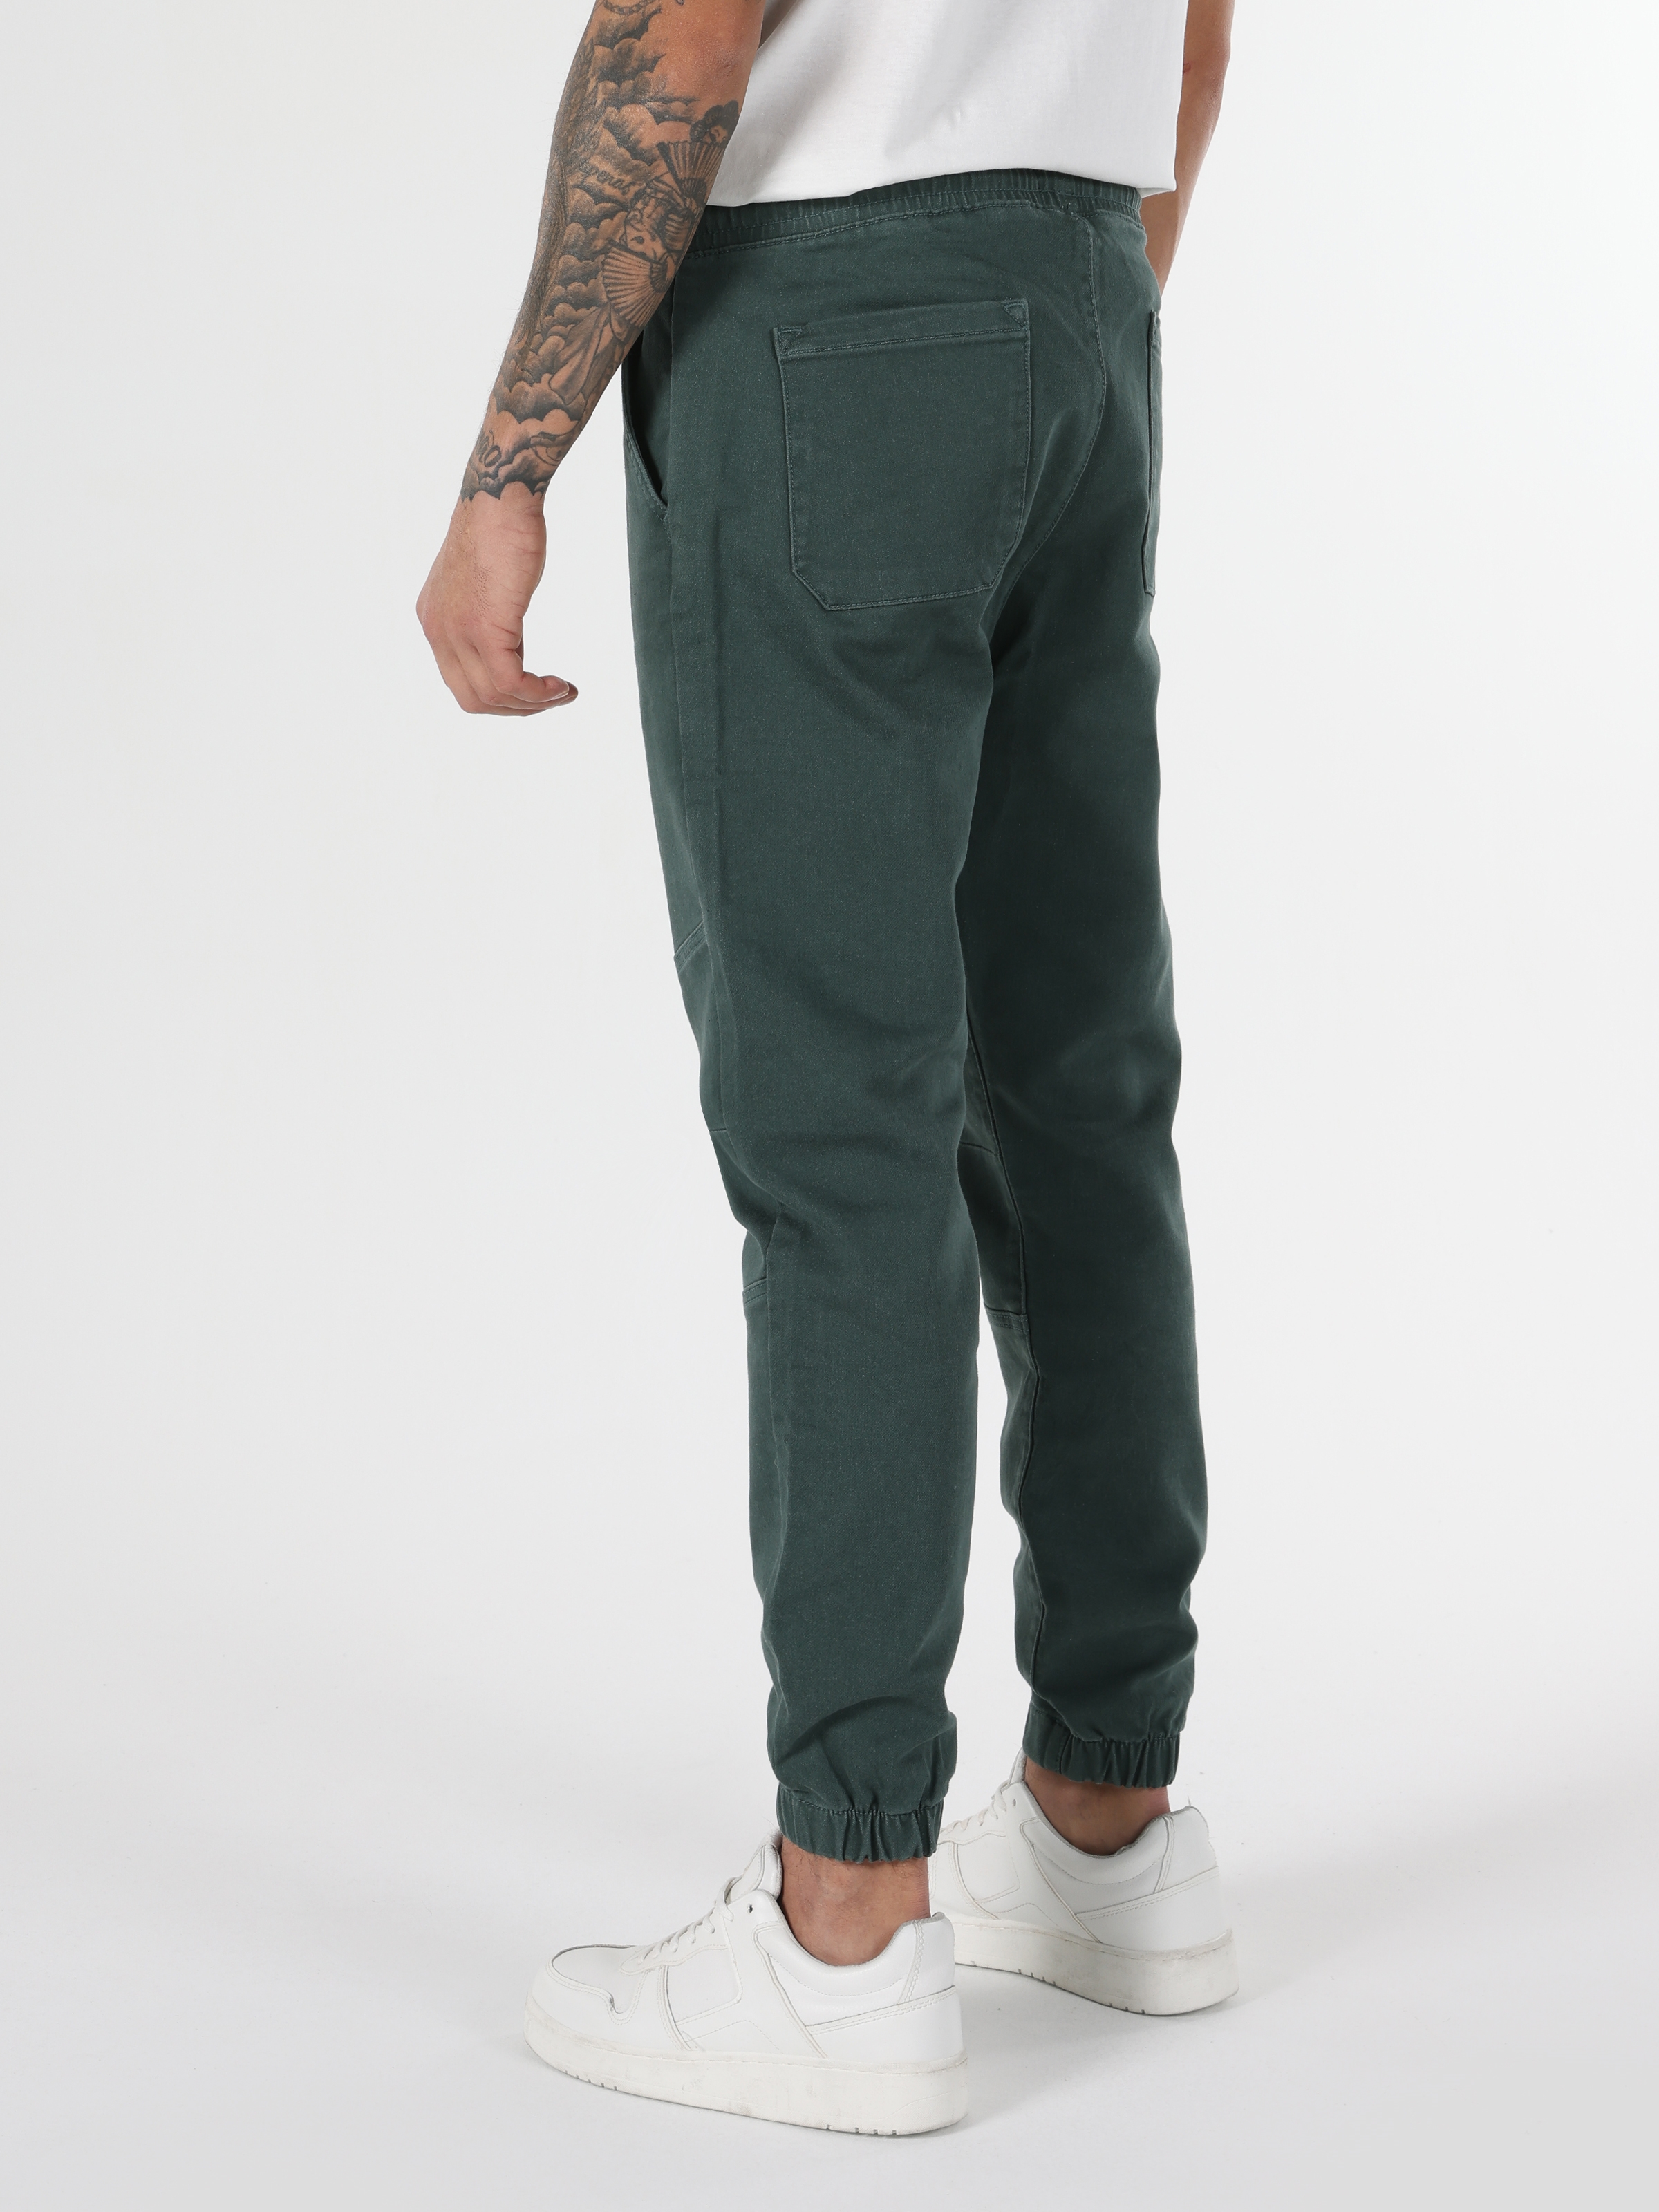 Afficher les détails de Pantalon Homme Vert Taille Moyenne, Coupe Slim, Jambe Droite